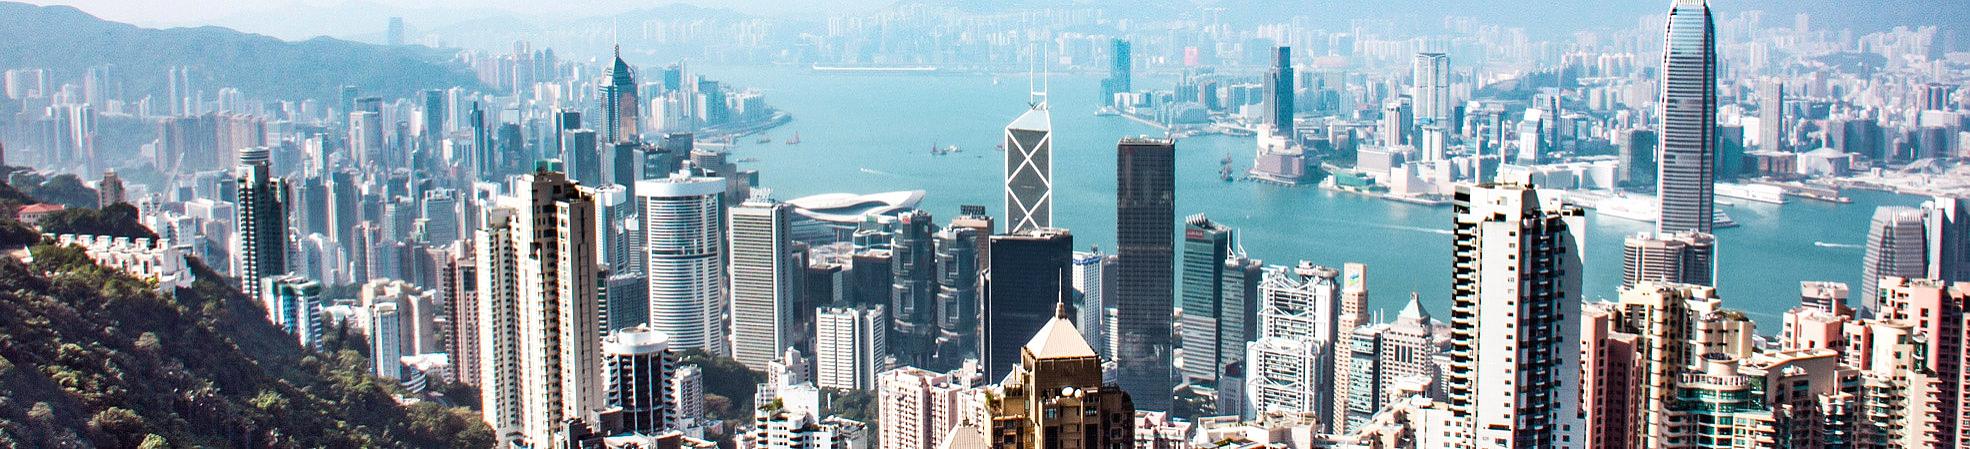 Hong Kong Travel Tips and FAQs